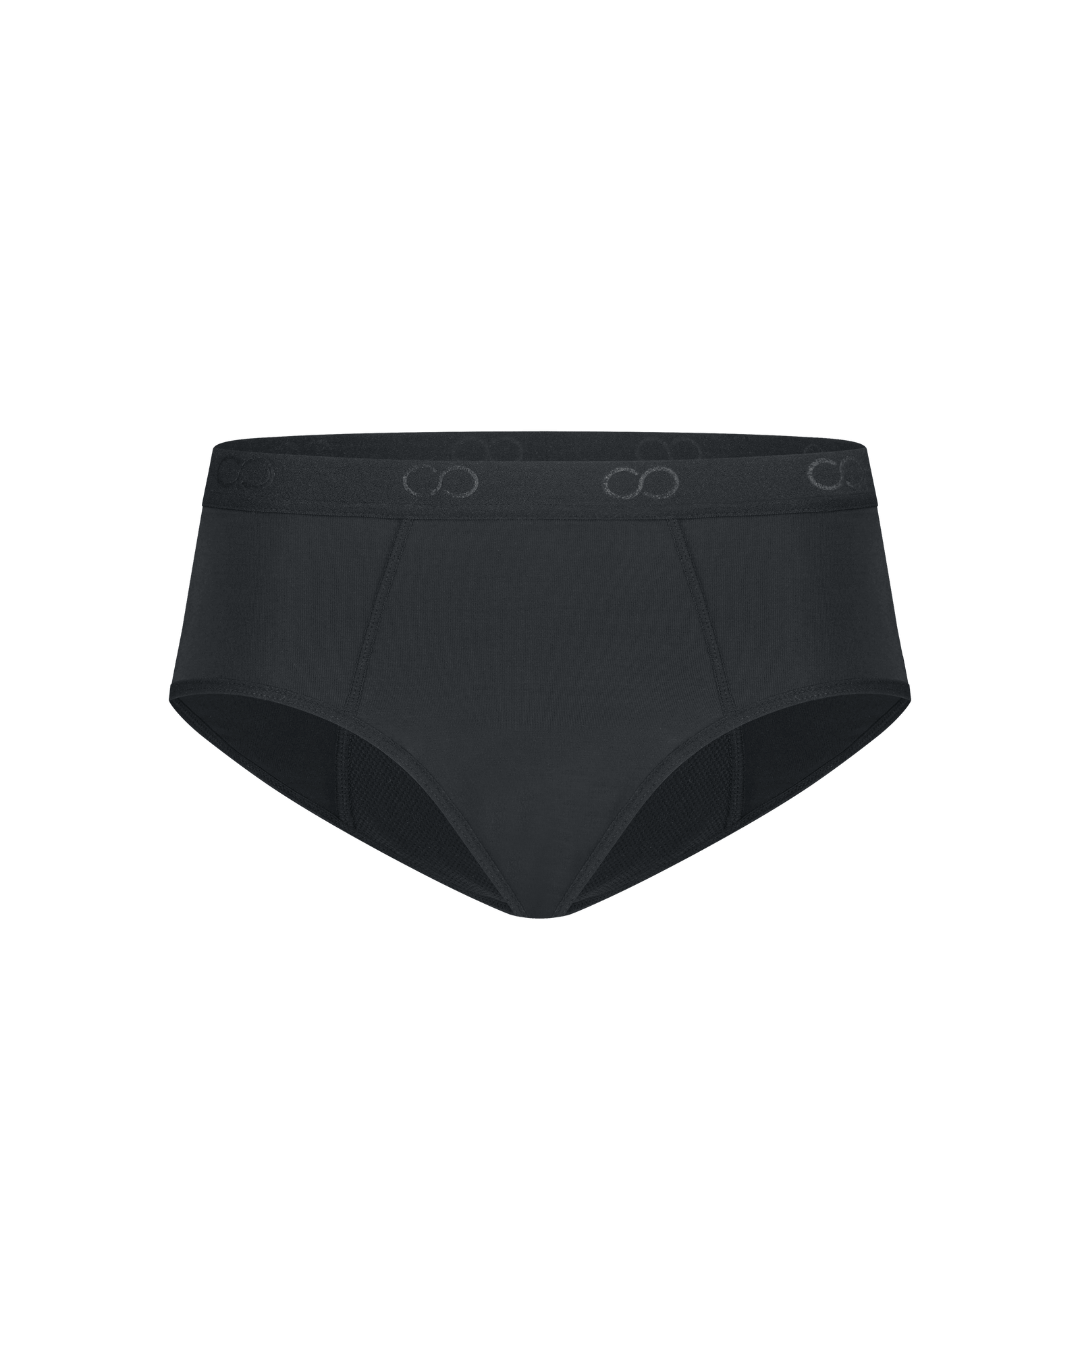 Sloggi PERIOD PANTS HIPSTER HEAVY - Period underwear - black